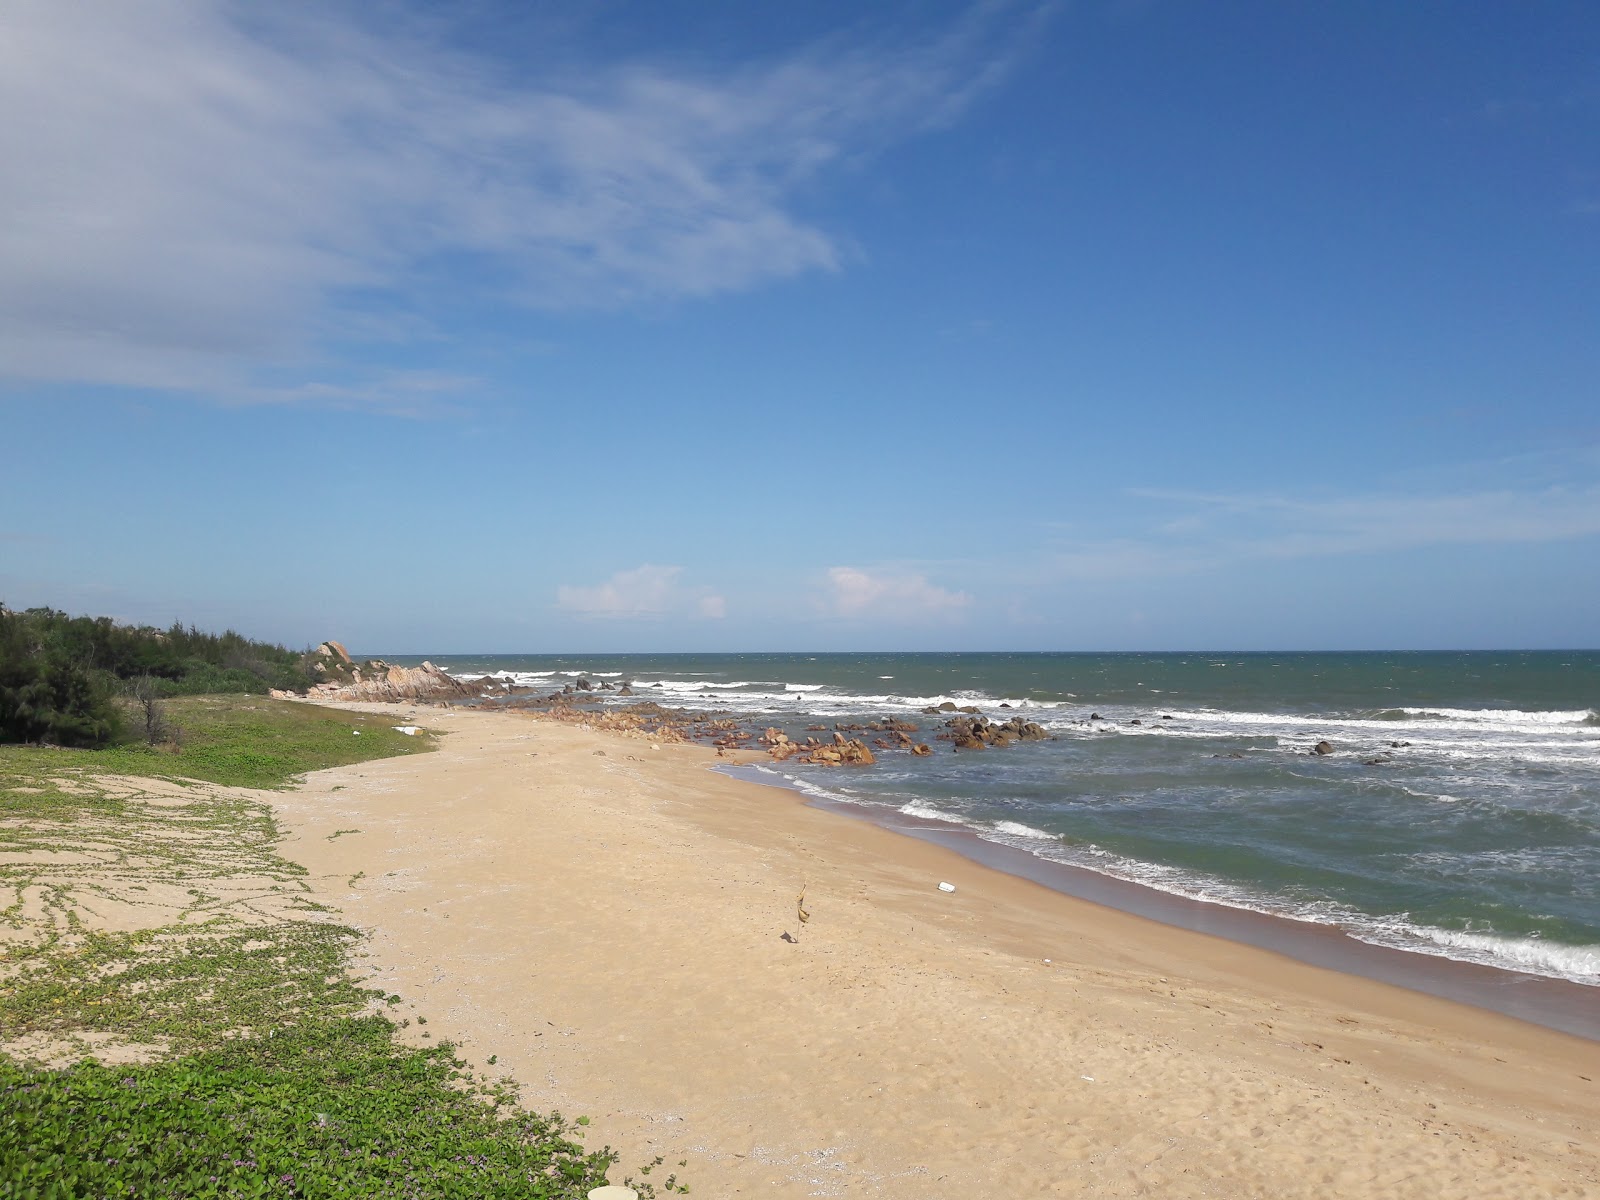 Zdjęcie Peaceful Resort beach z powierzchnią jasny piasek